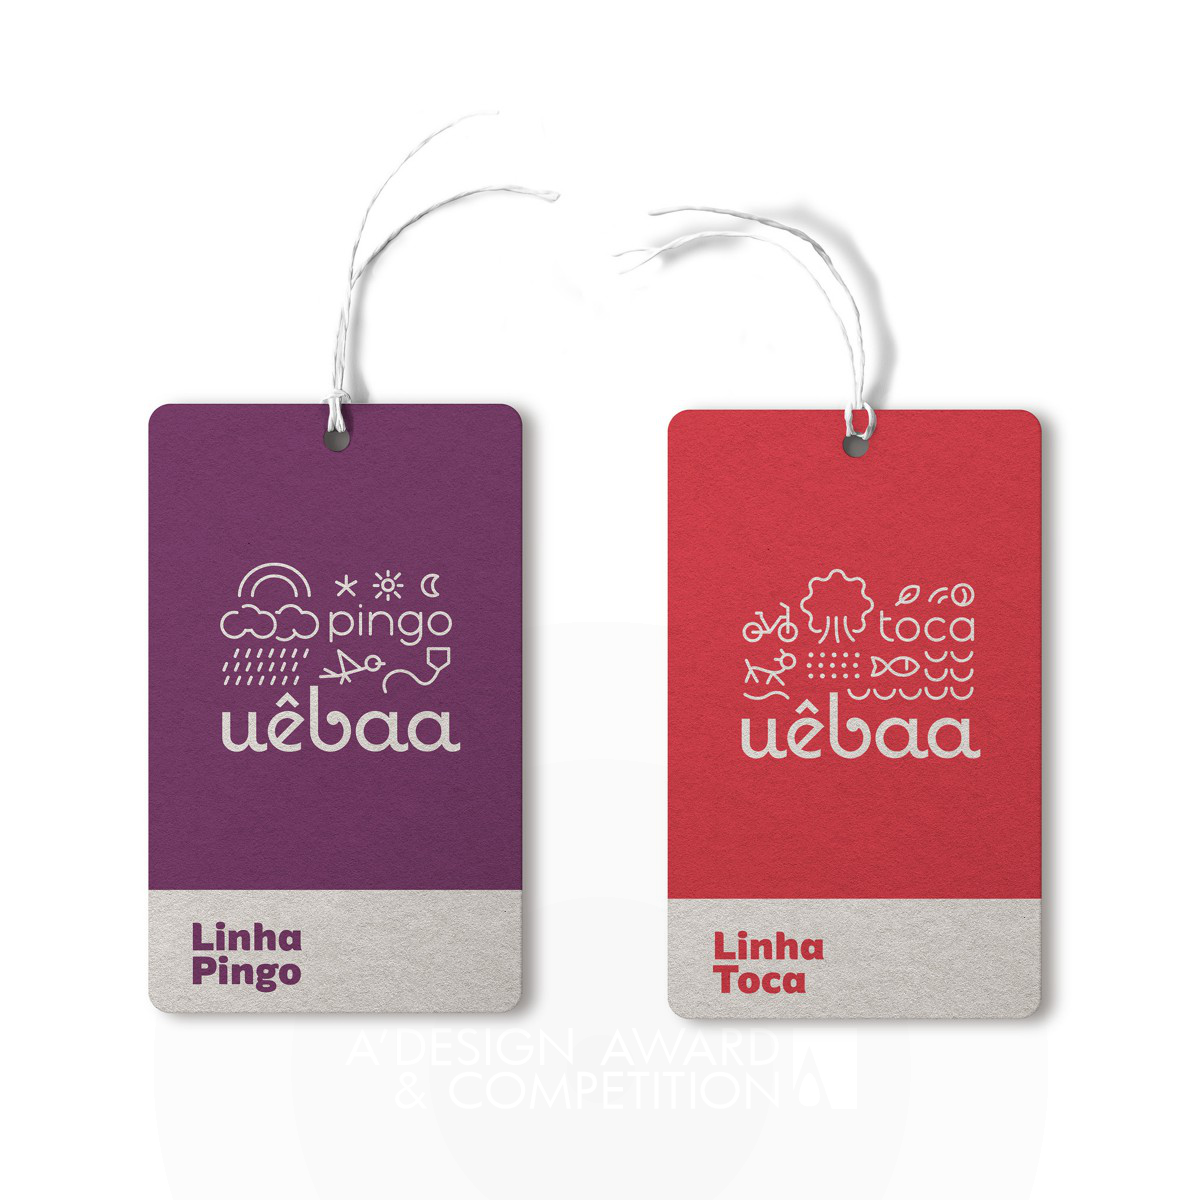 Uebaa Branding by Ruis Vargas